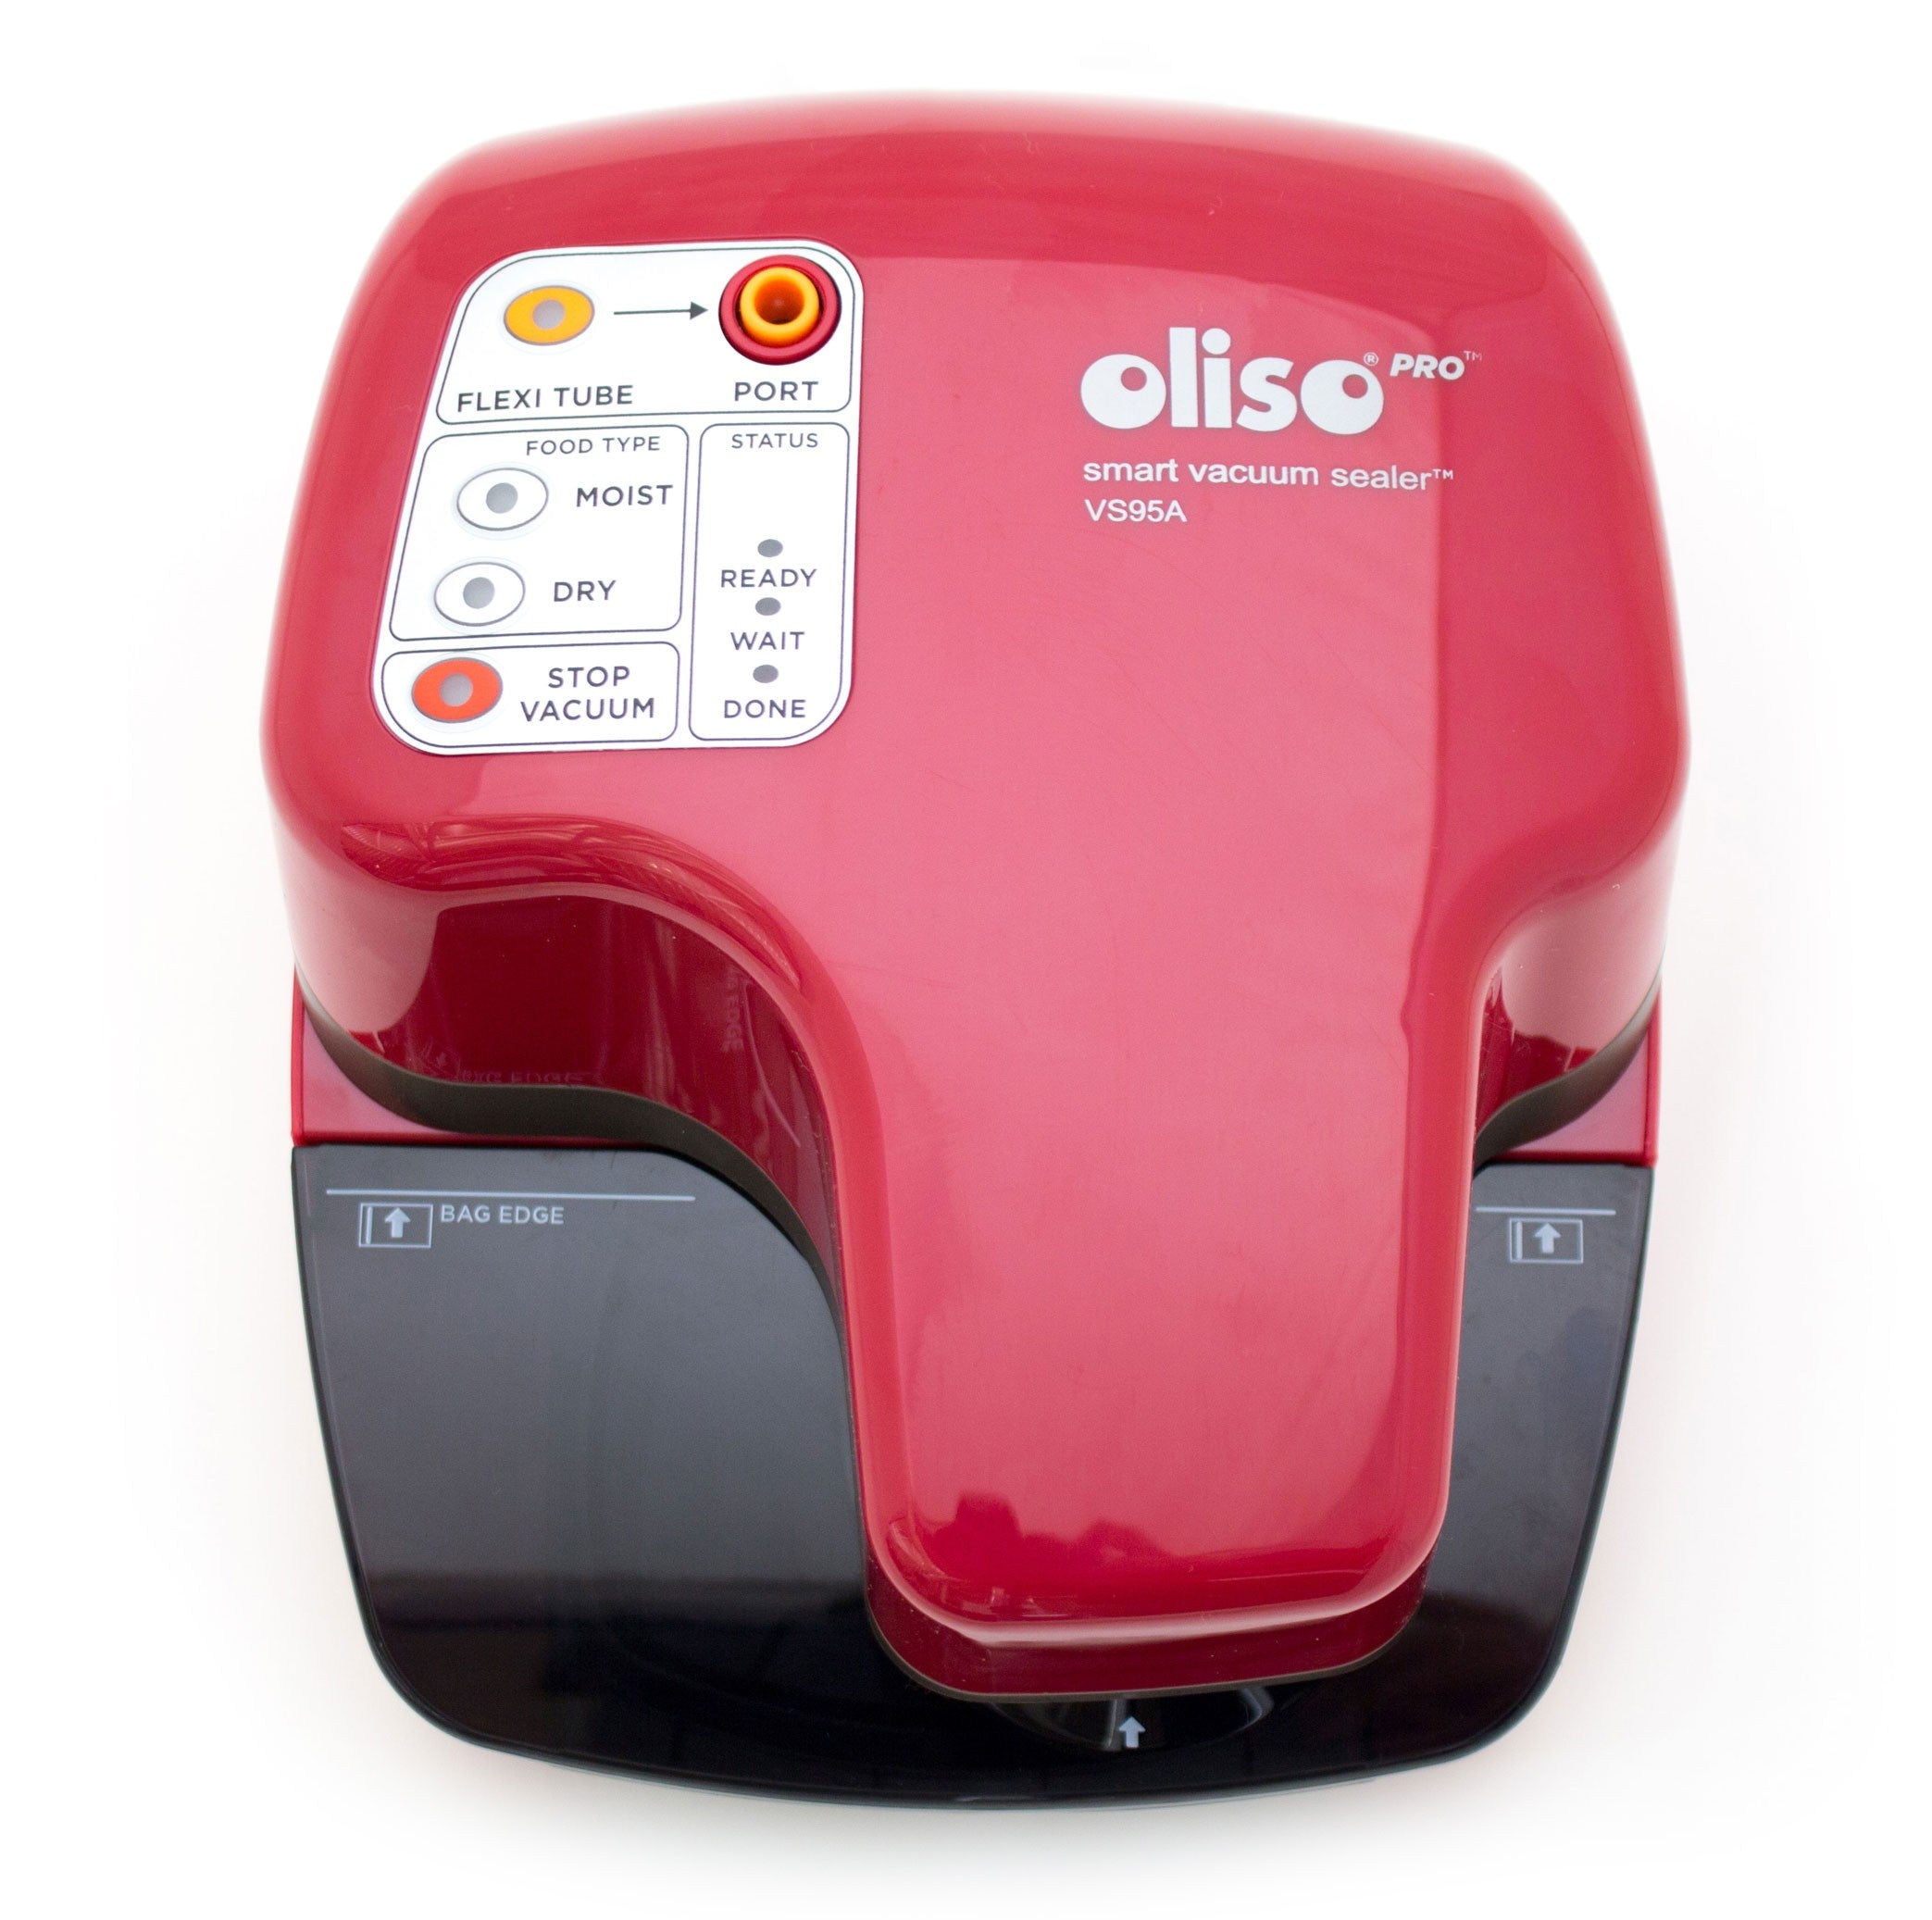 OLISO PRO VS95A (RED) SMART VACUUM SEALER STARTER KIT